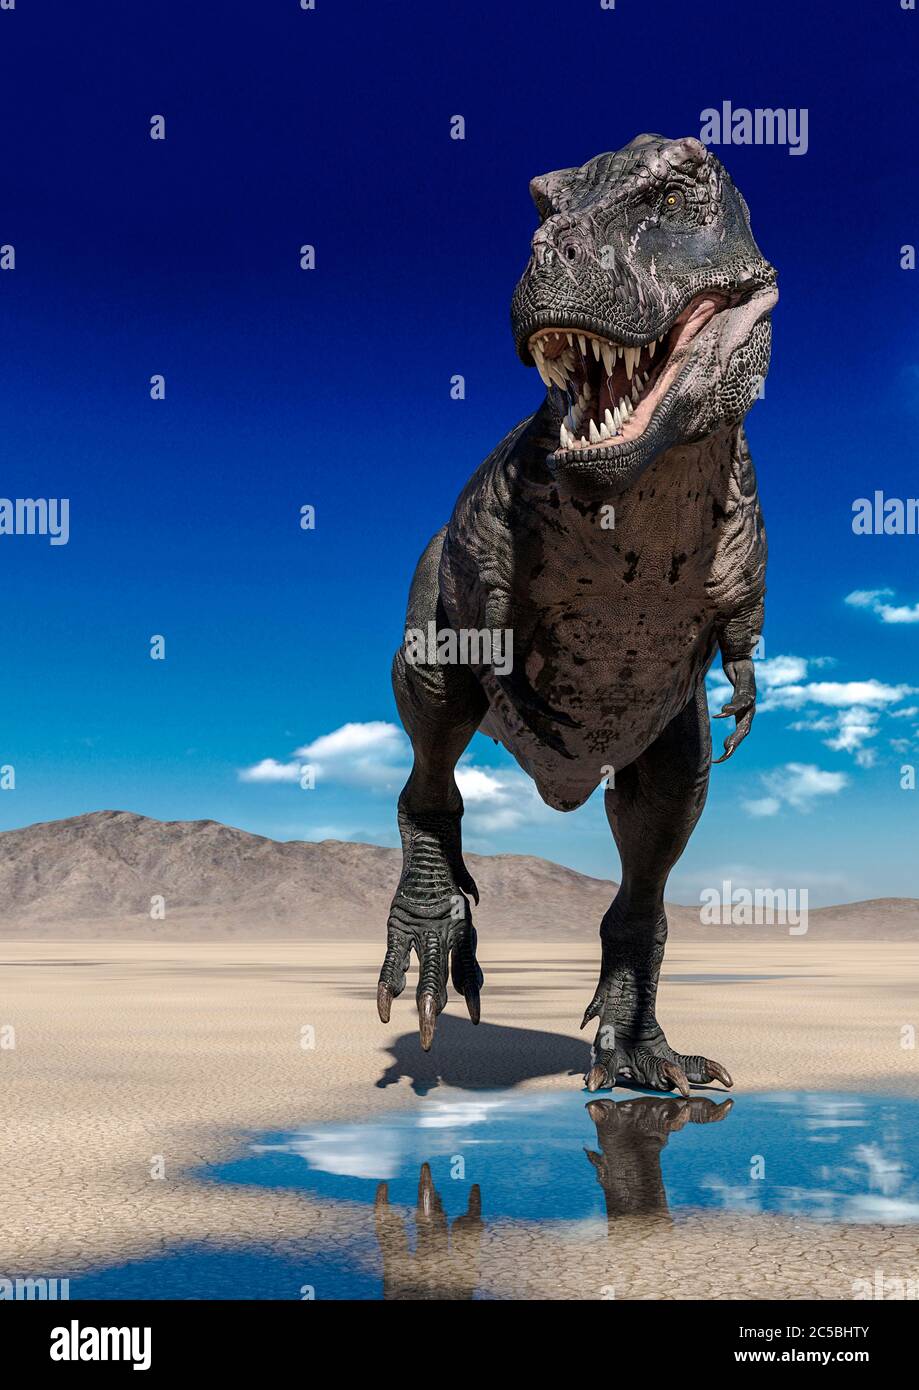 tyrannosaurus rex is walking on desert, 3d illustration Stock Photo